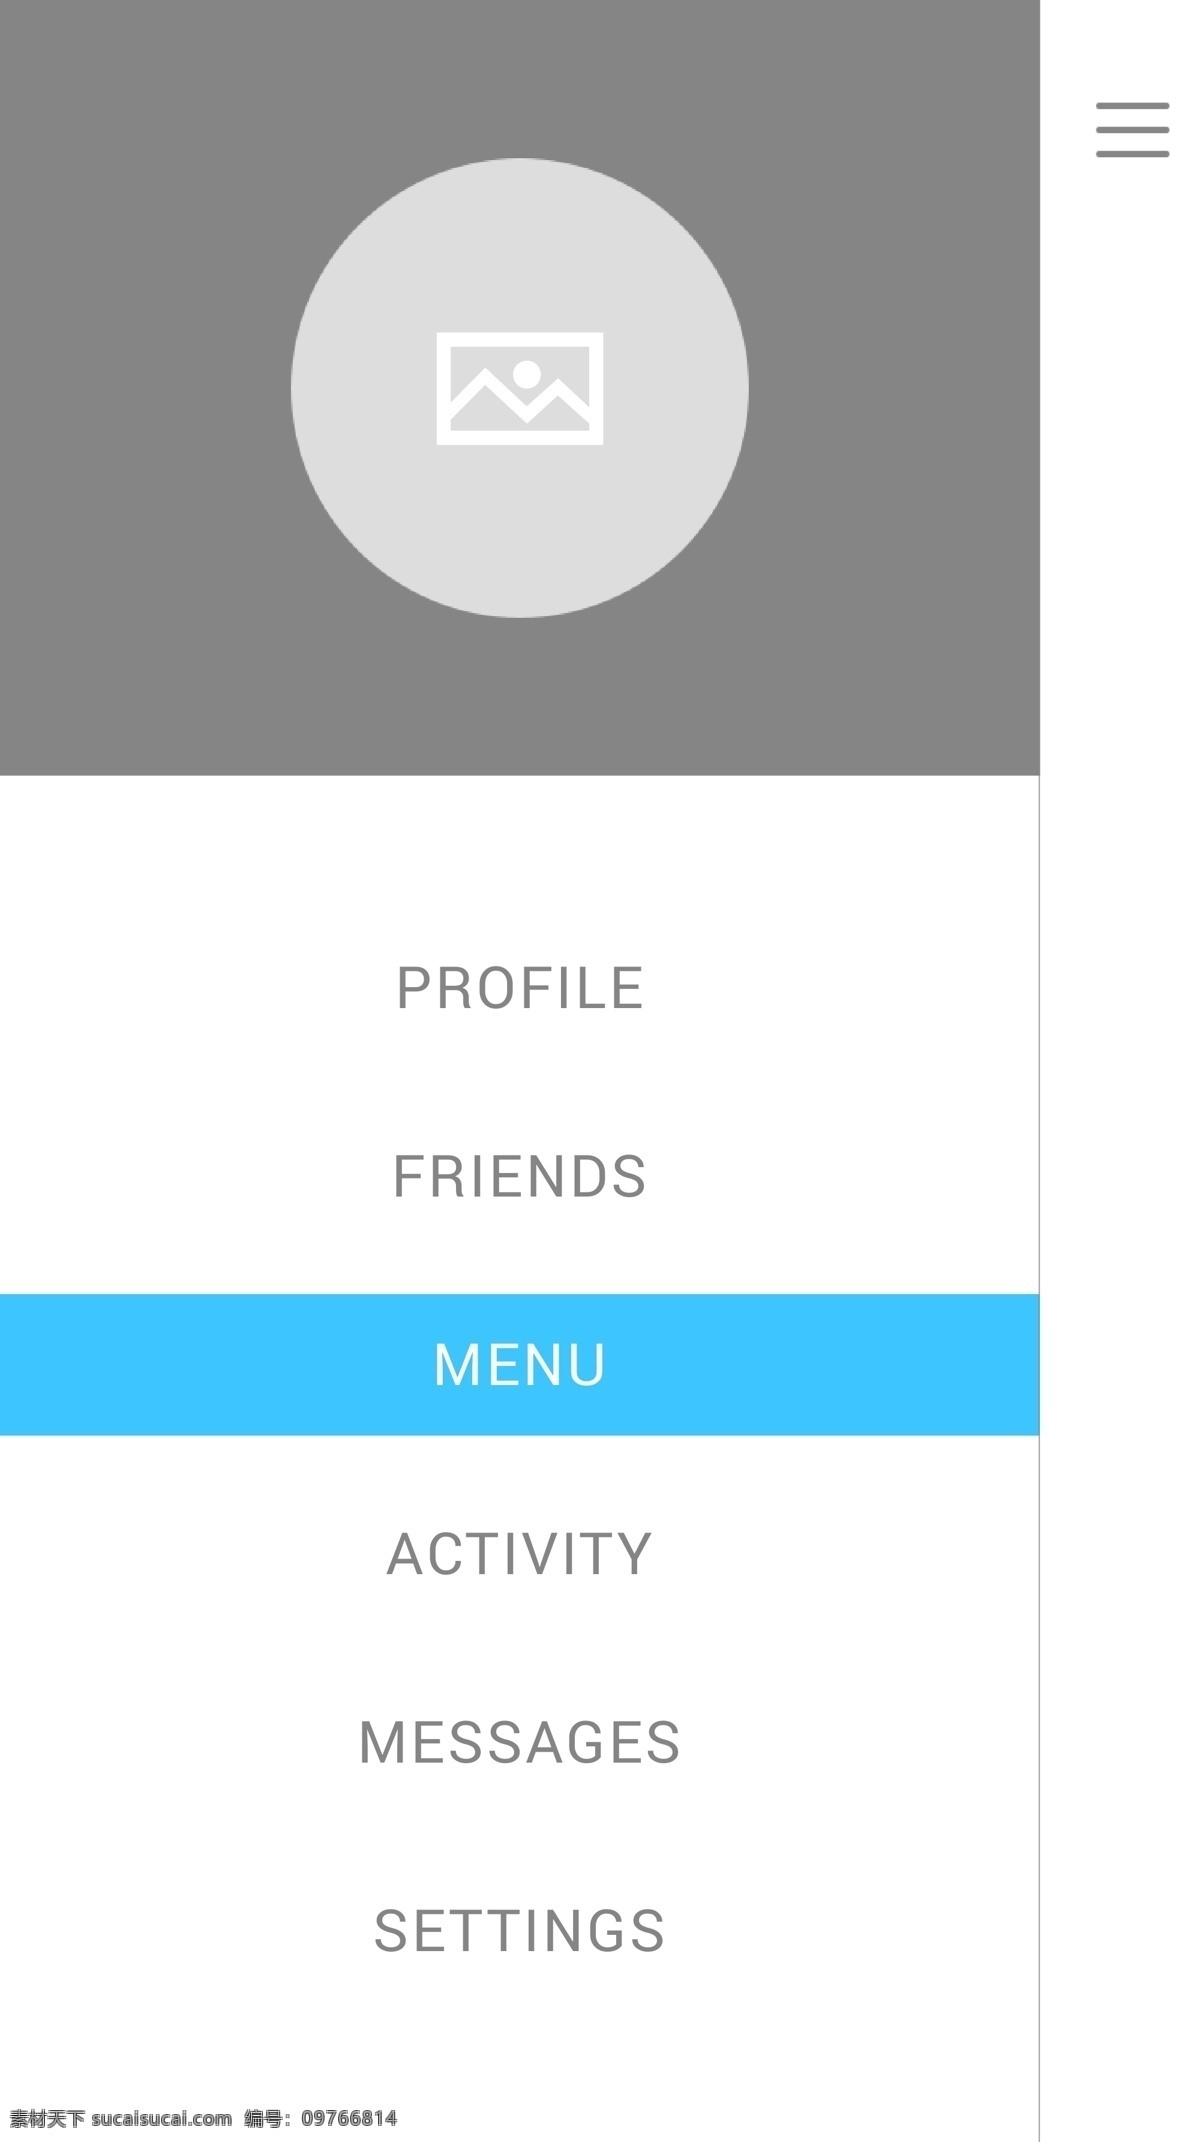 菜单模板样式 app网页 app模板 app页面 ui 版式 界面设计 界面 菜单 商业 模板 白色